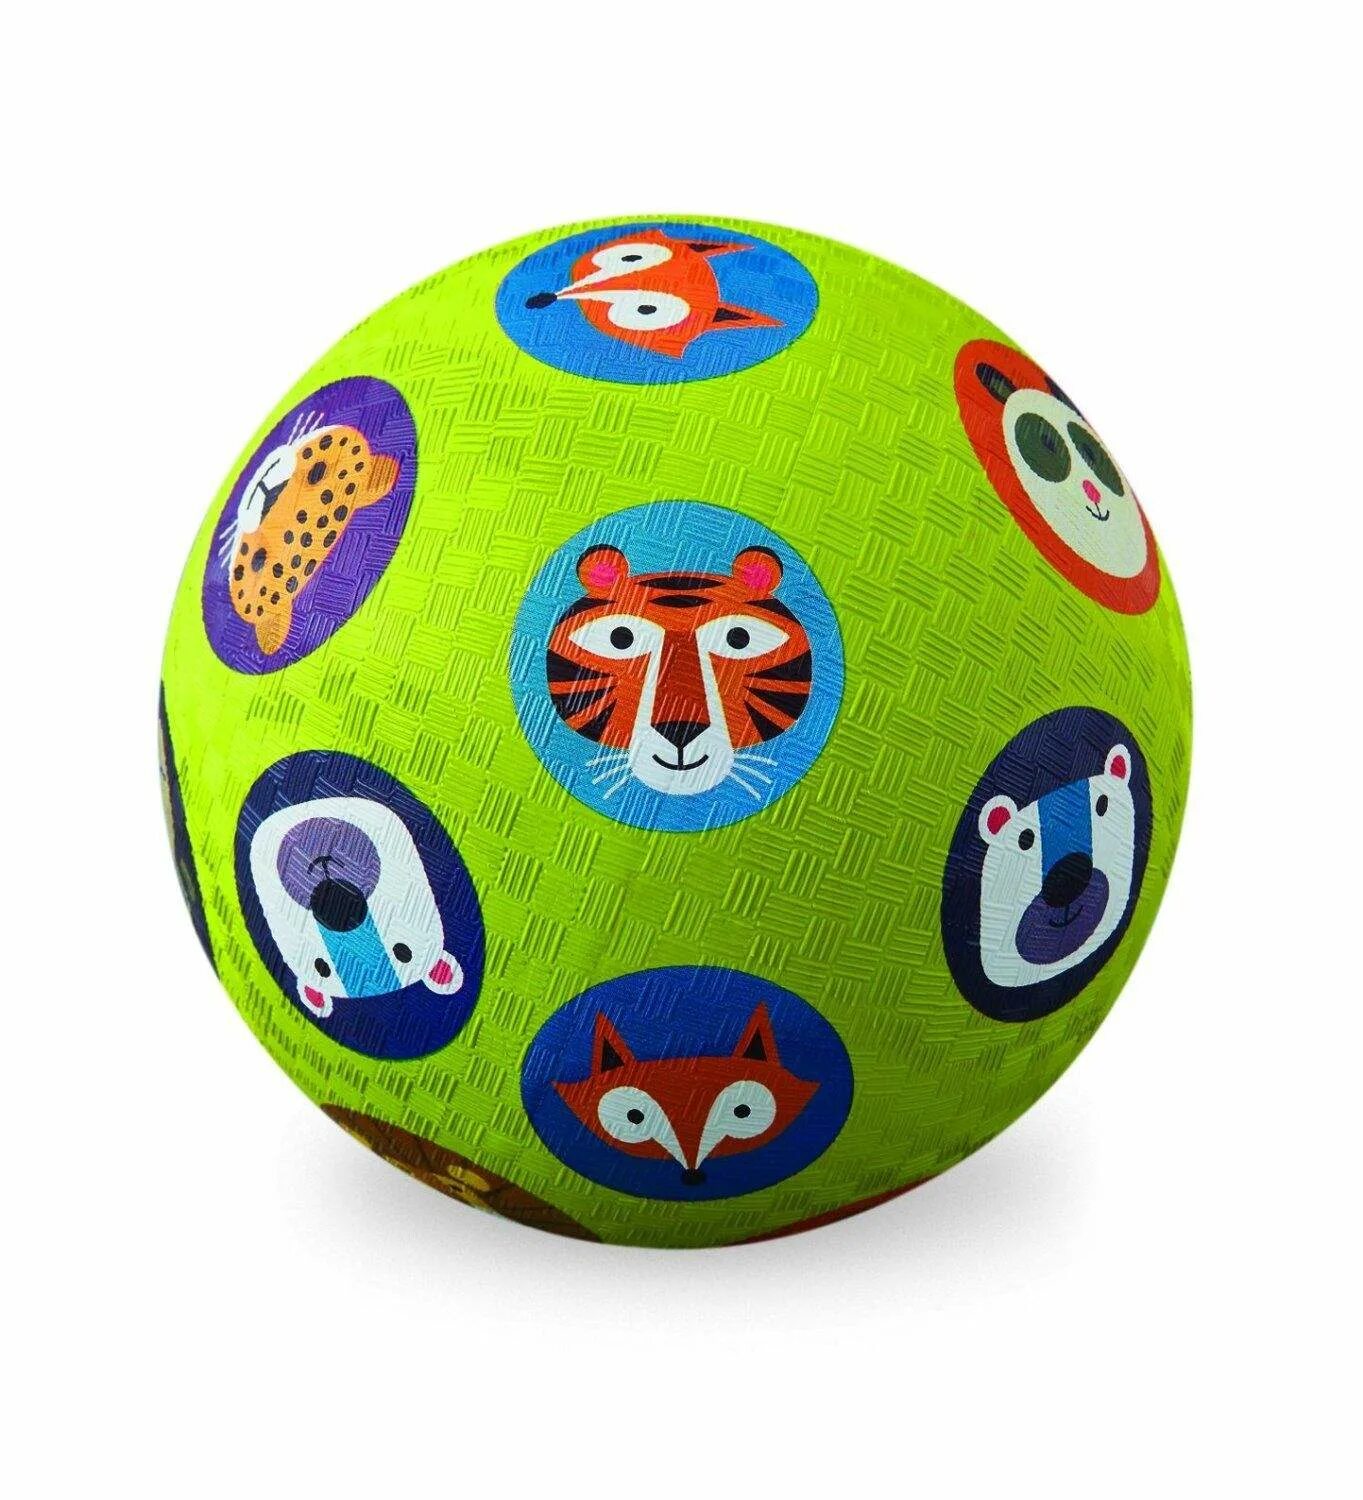 Мяч Crocodile Creek 18 см. Мяч Crocodile Creek машинки. Мяч для детей. Мячи детские. Купи мяч ребенку